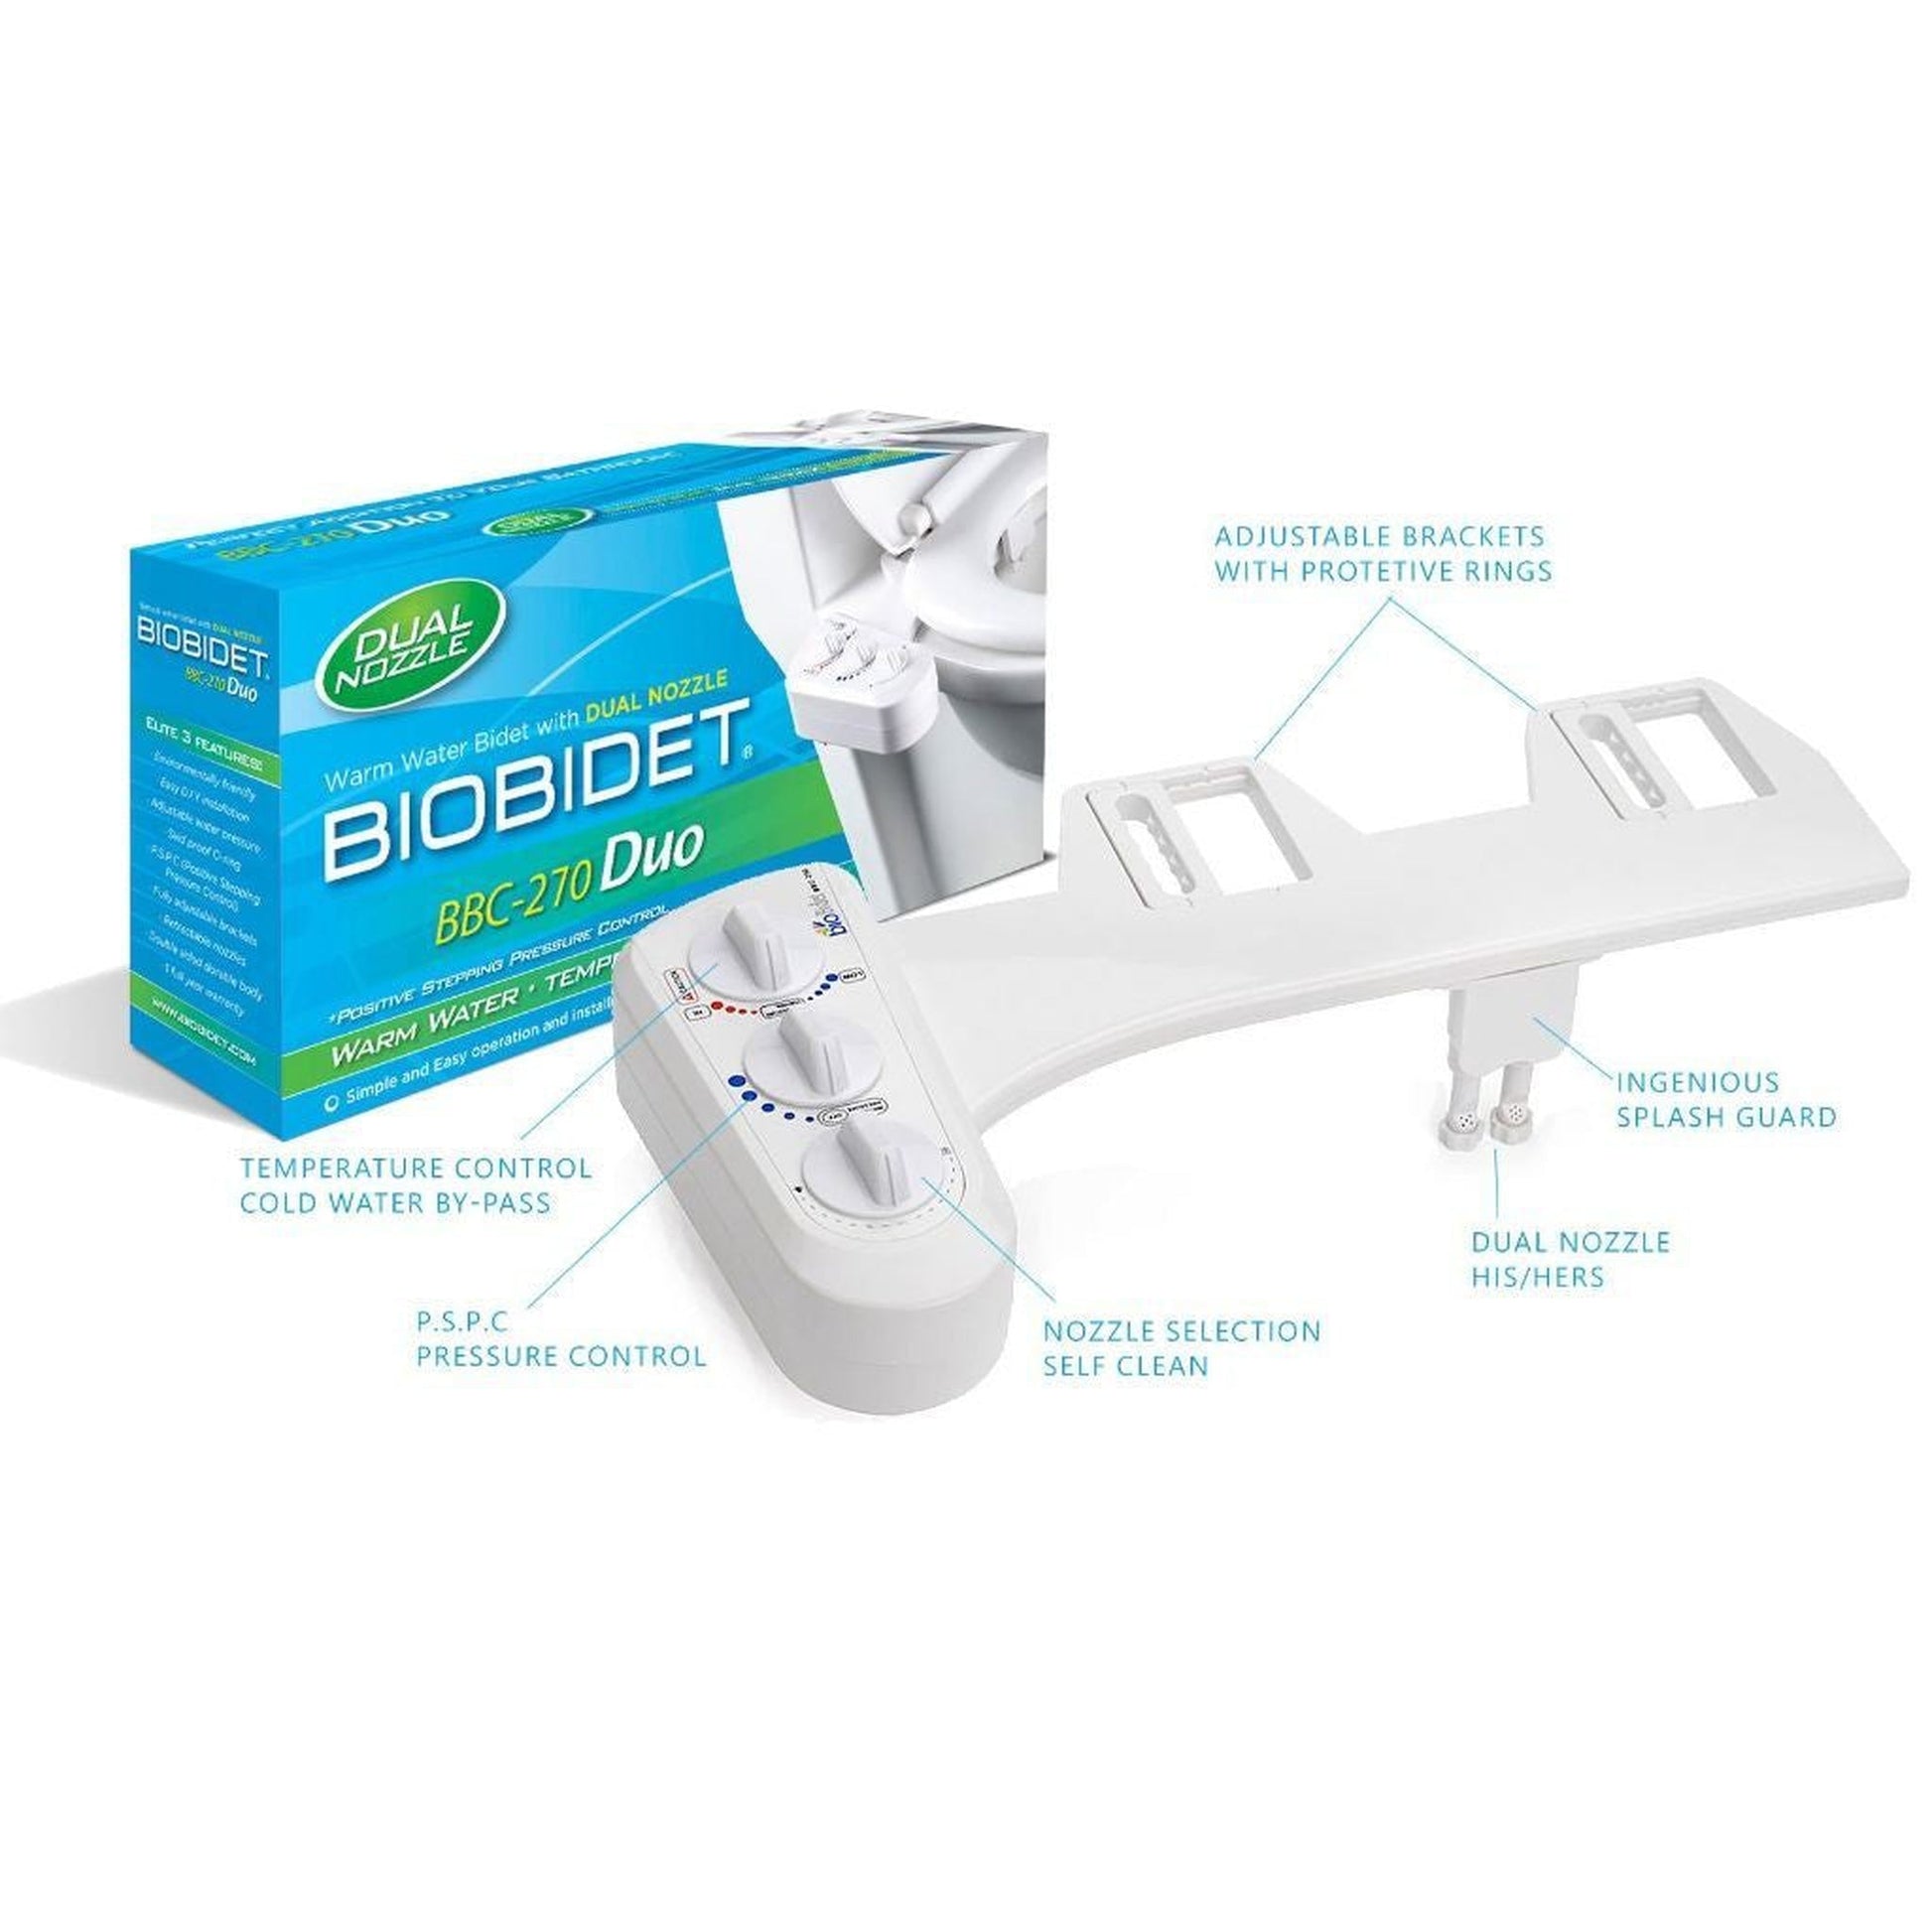 Bio Bidet BB-270 17" White Duo Non-Electric Bidet Attachment With Retractable Dual Nozzle